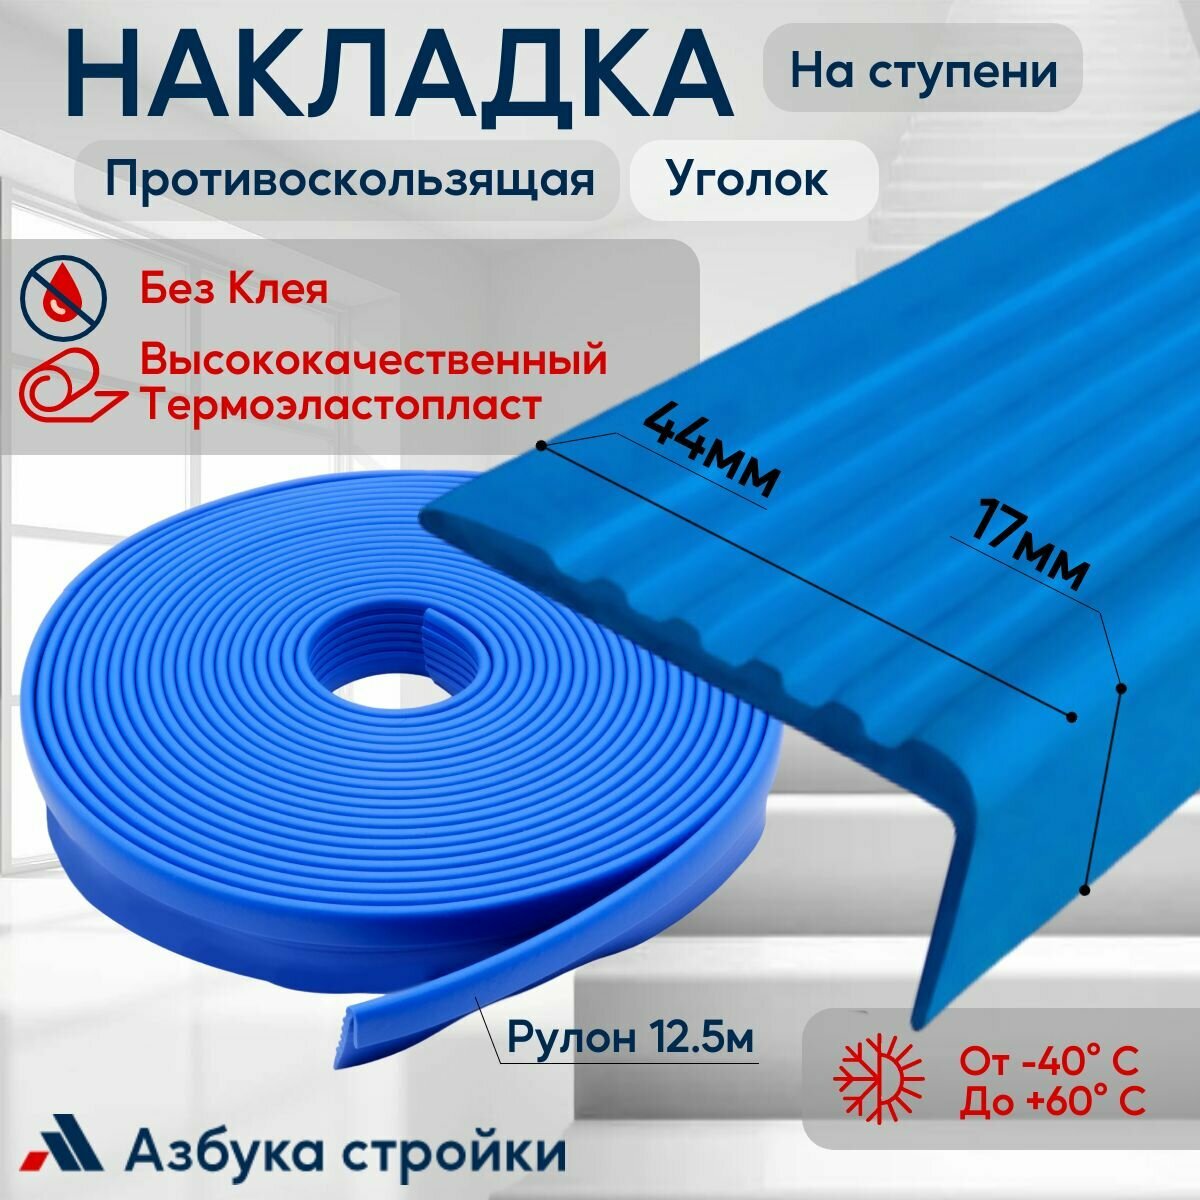 Противоскользящая лента Противоскользящая резиновая накладка угол на ступени без клея 44мм, длина 12.5м, синий